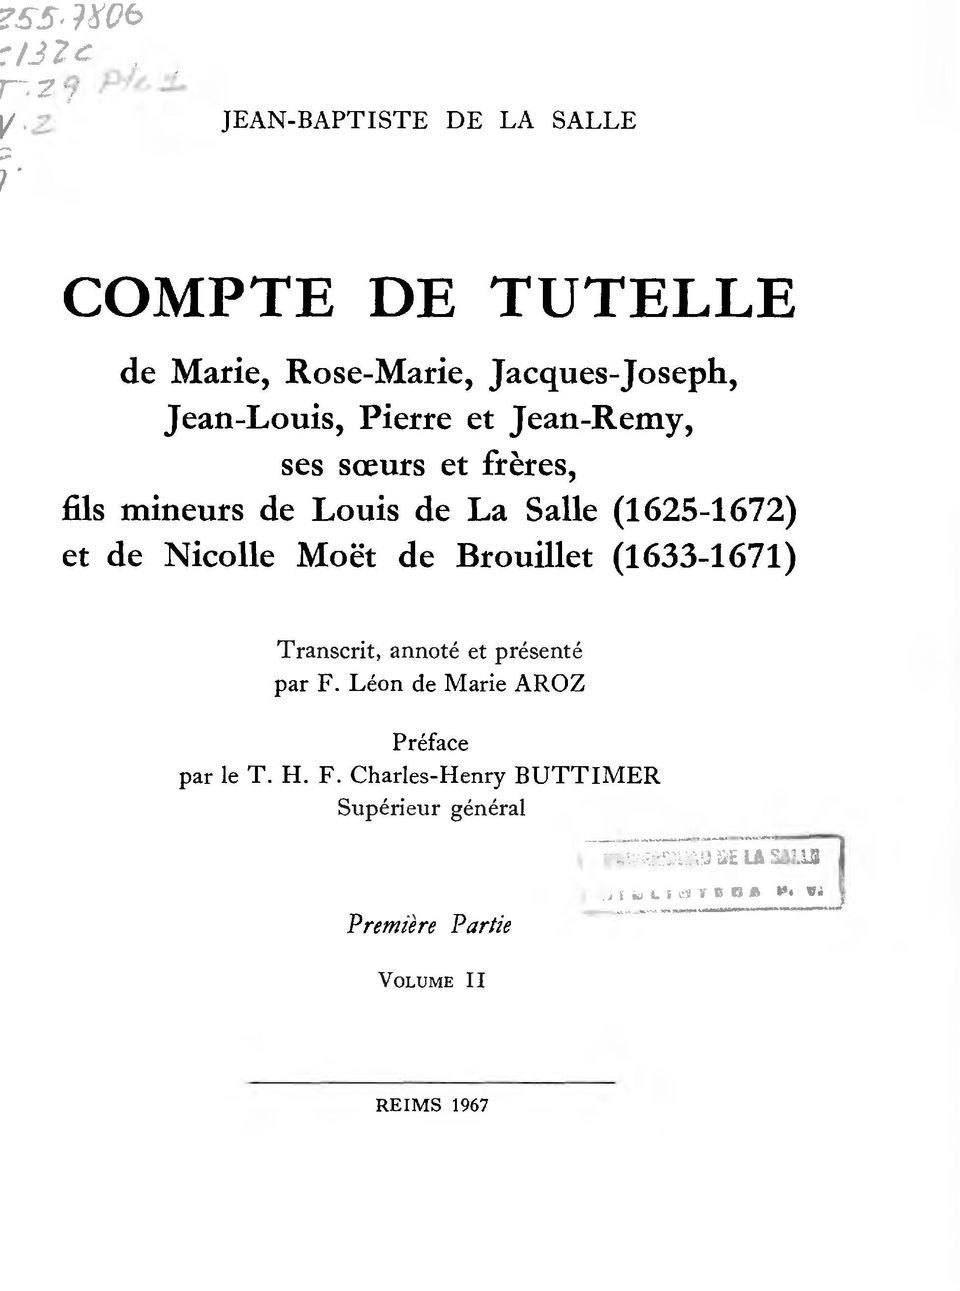 Nicolle Moet de Brouillet (1633-1671) Transcrit, annote et presente par F.